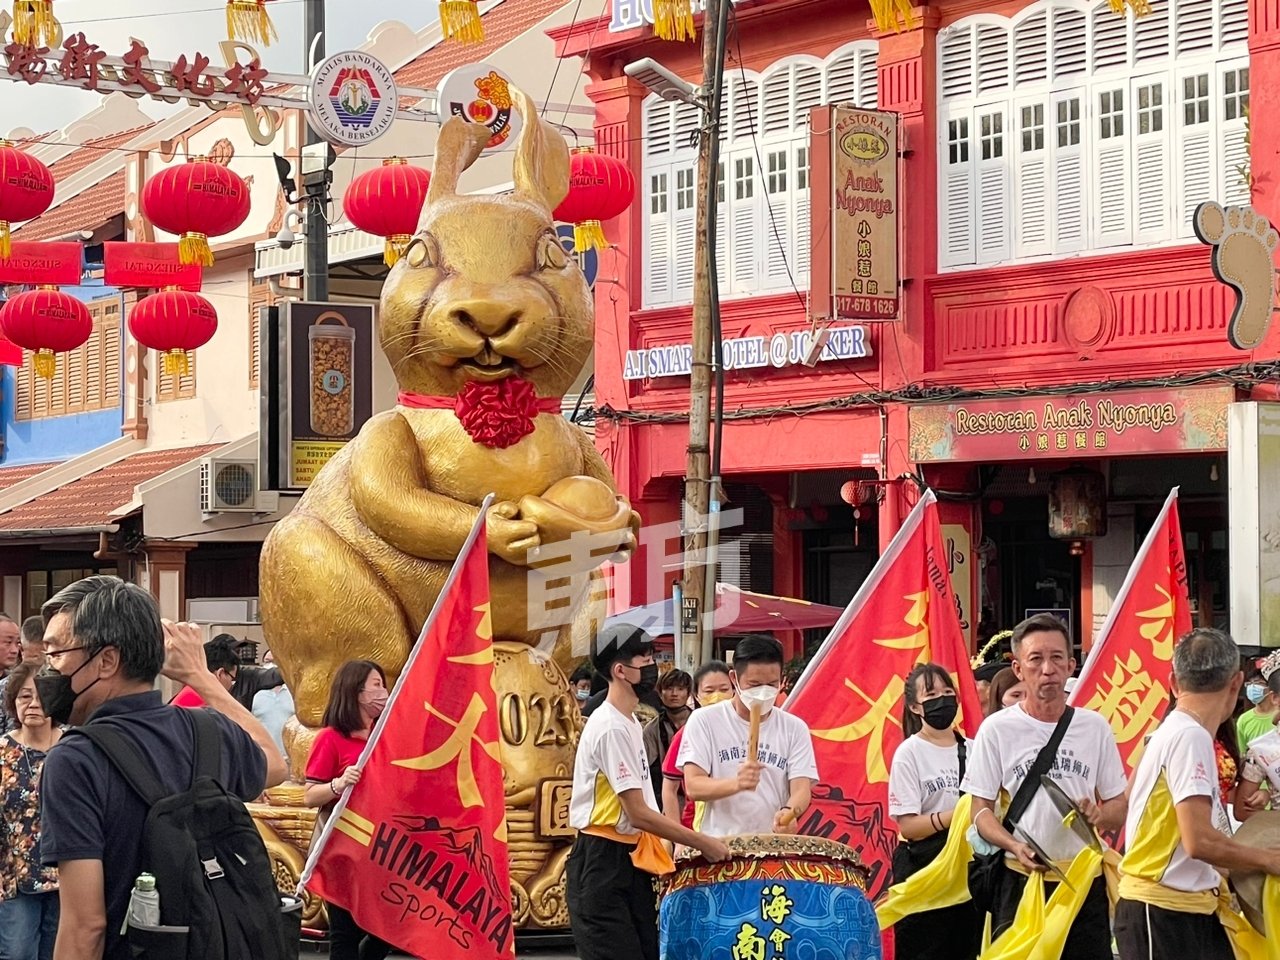 “兔圆年”巨型生肖吉祥物正式进驻鸡场街。